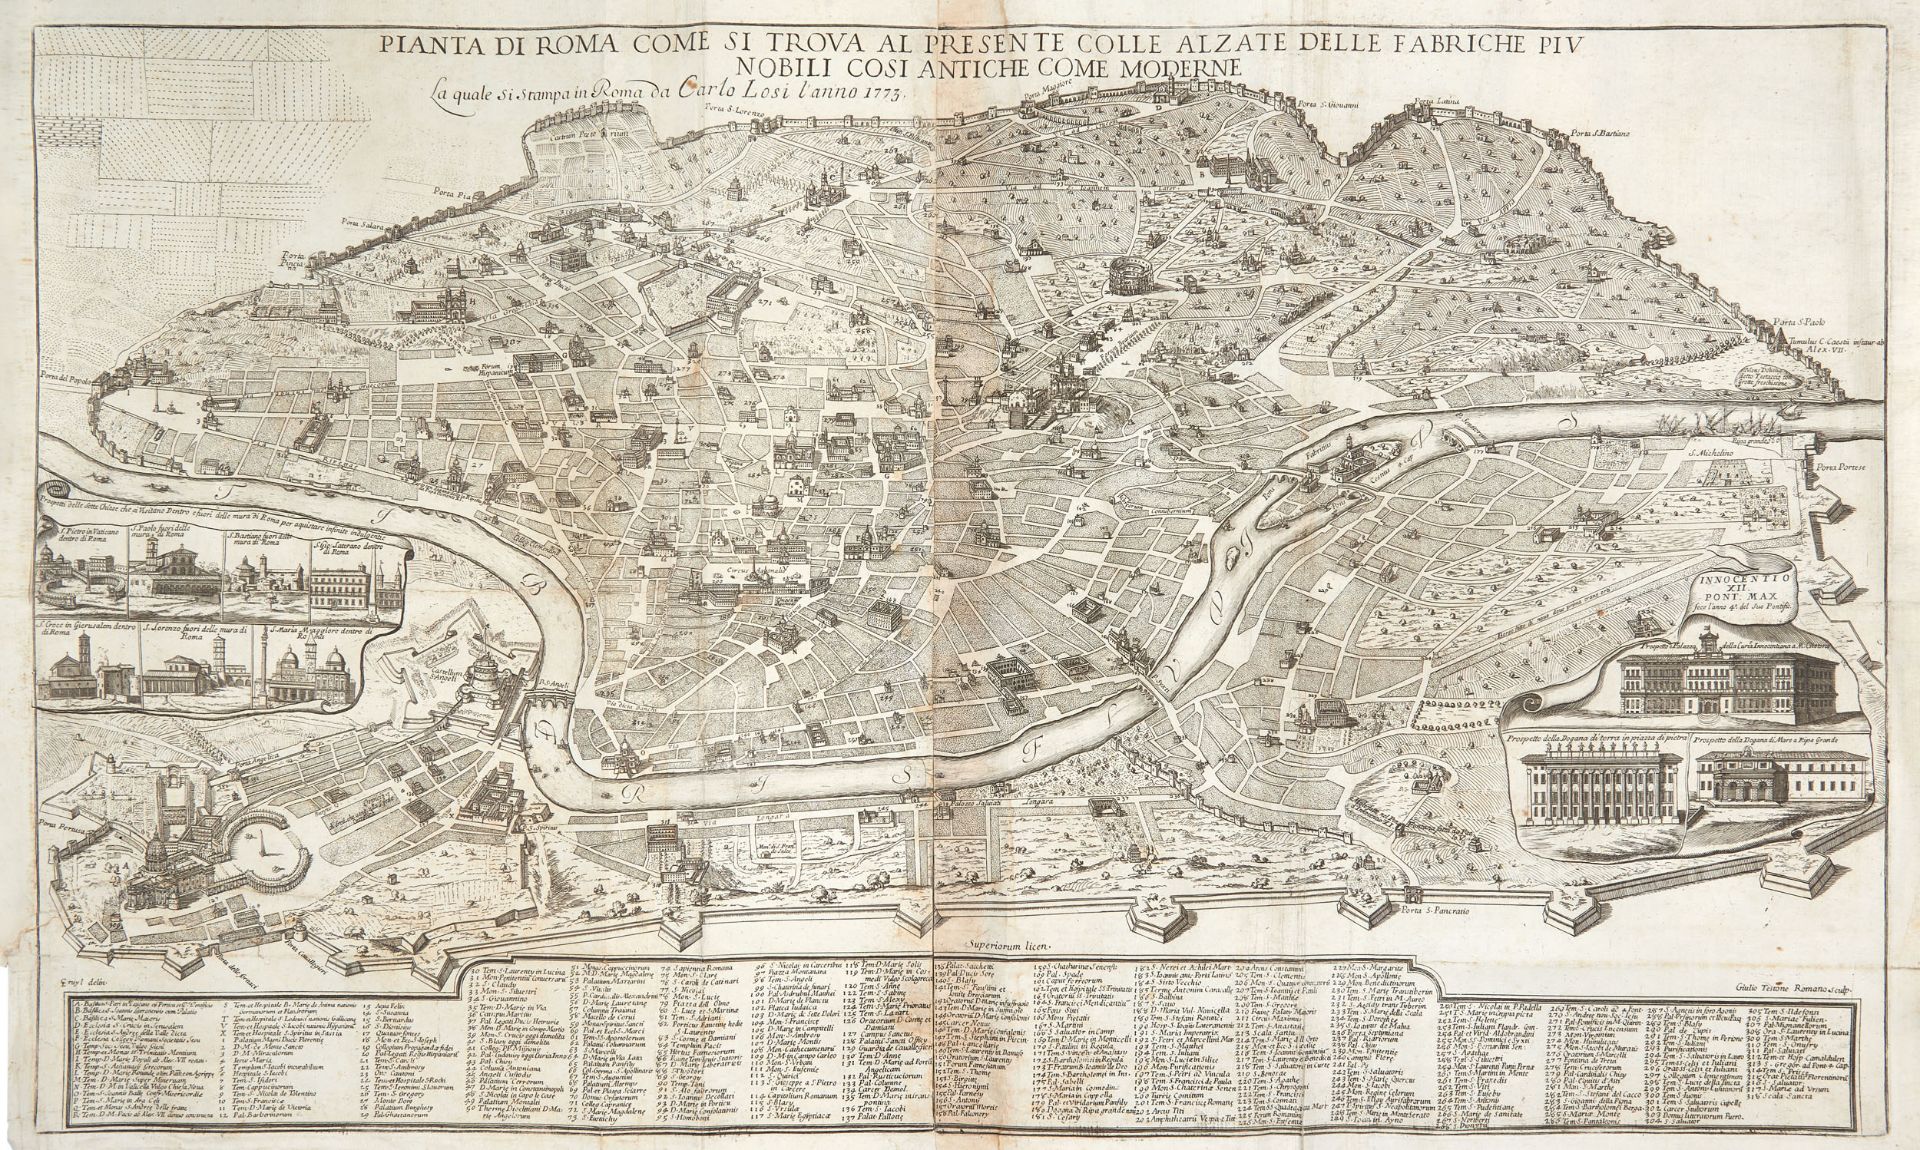 CRUYL, Lievin, (1634-1720). Pianta di Roma come si trova al presente colle alzate delle fabbriche